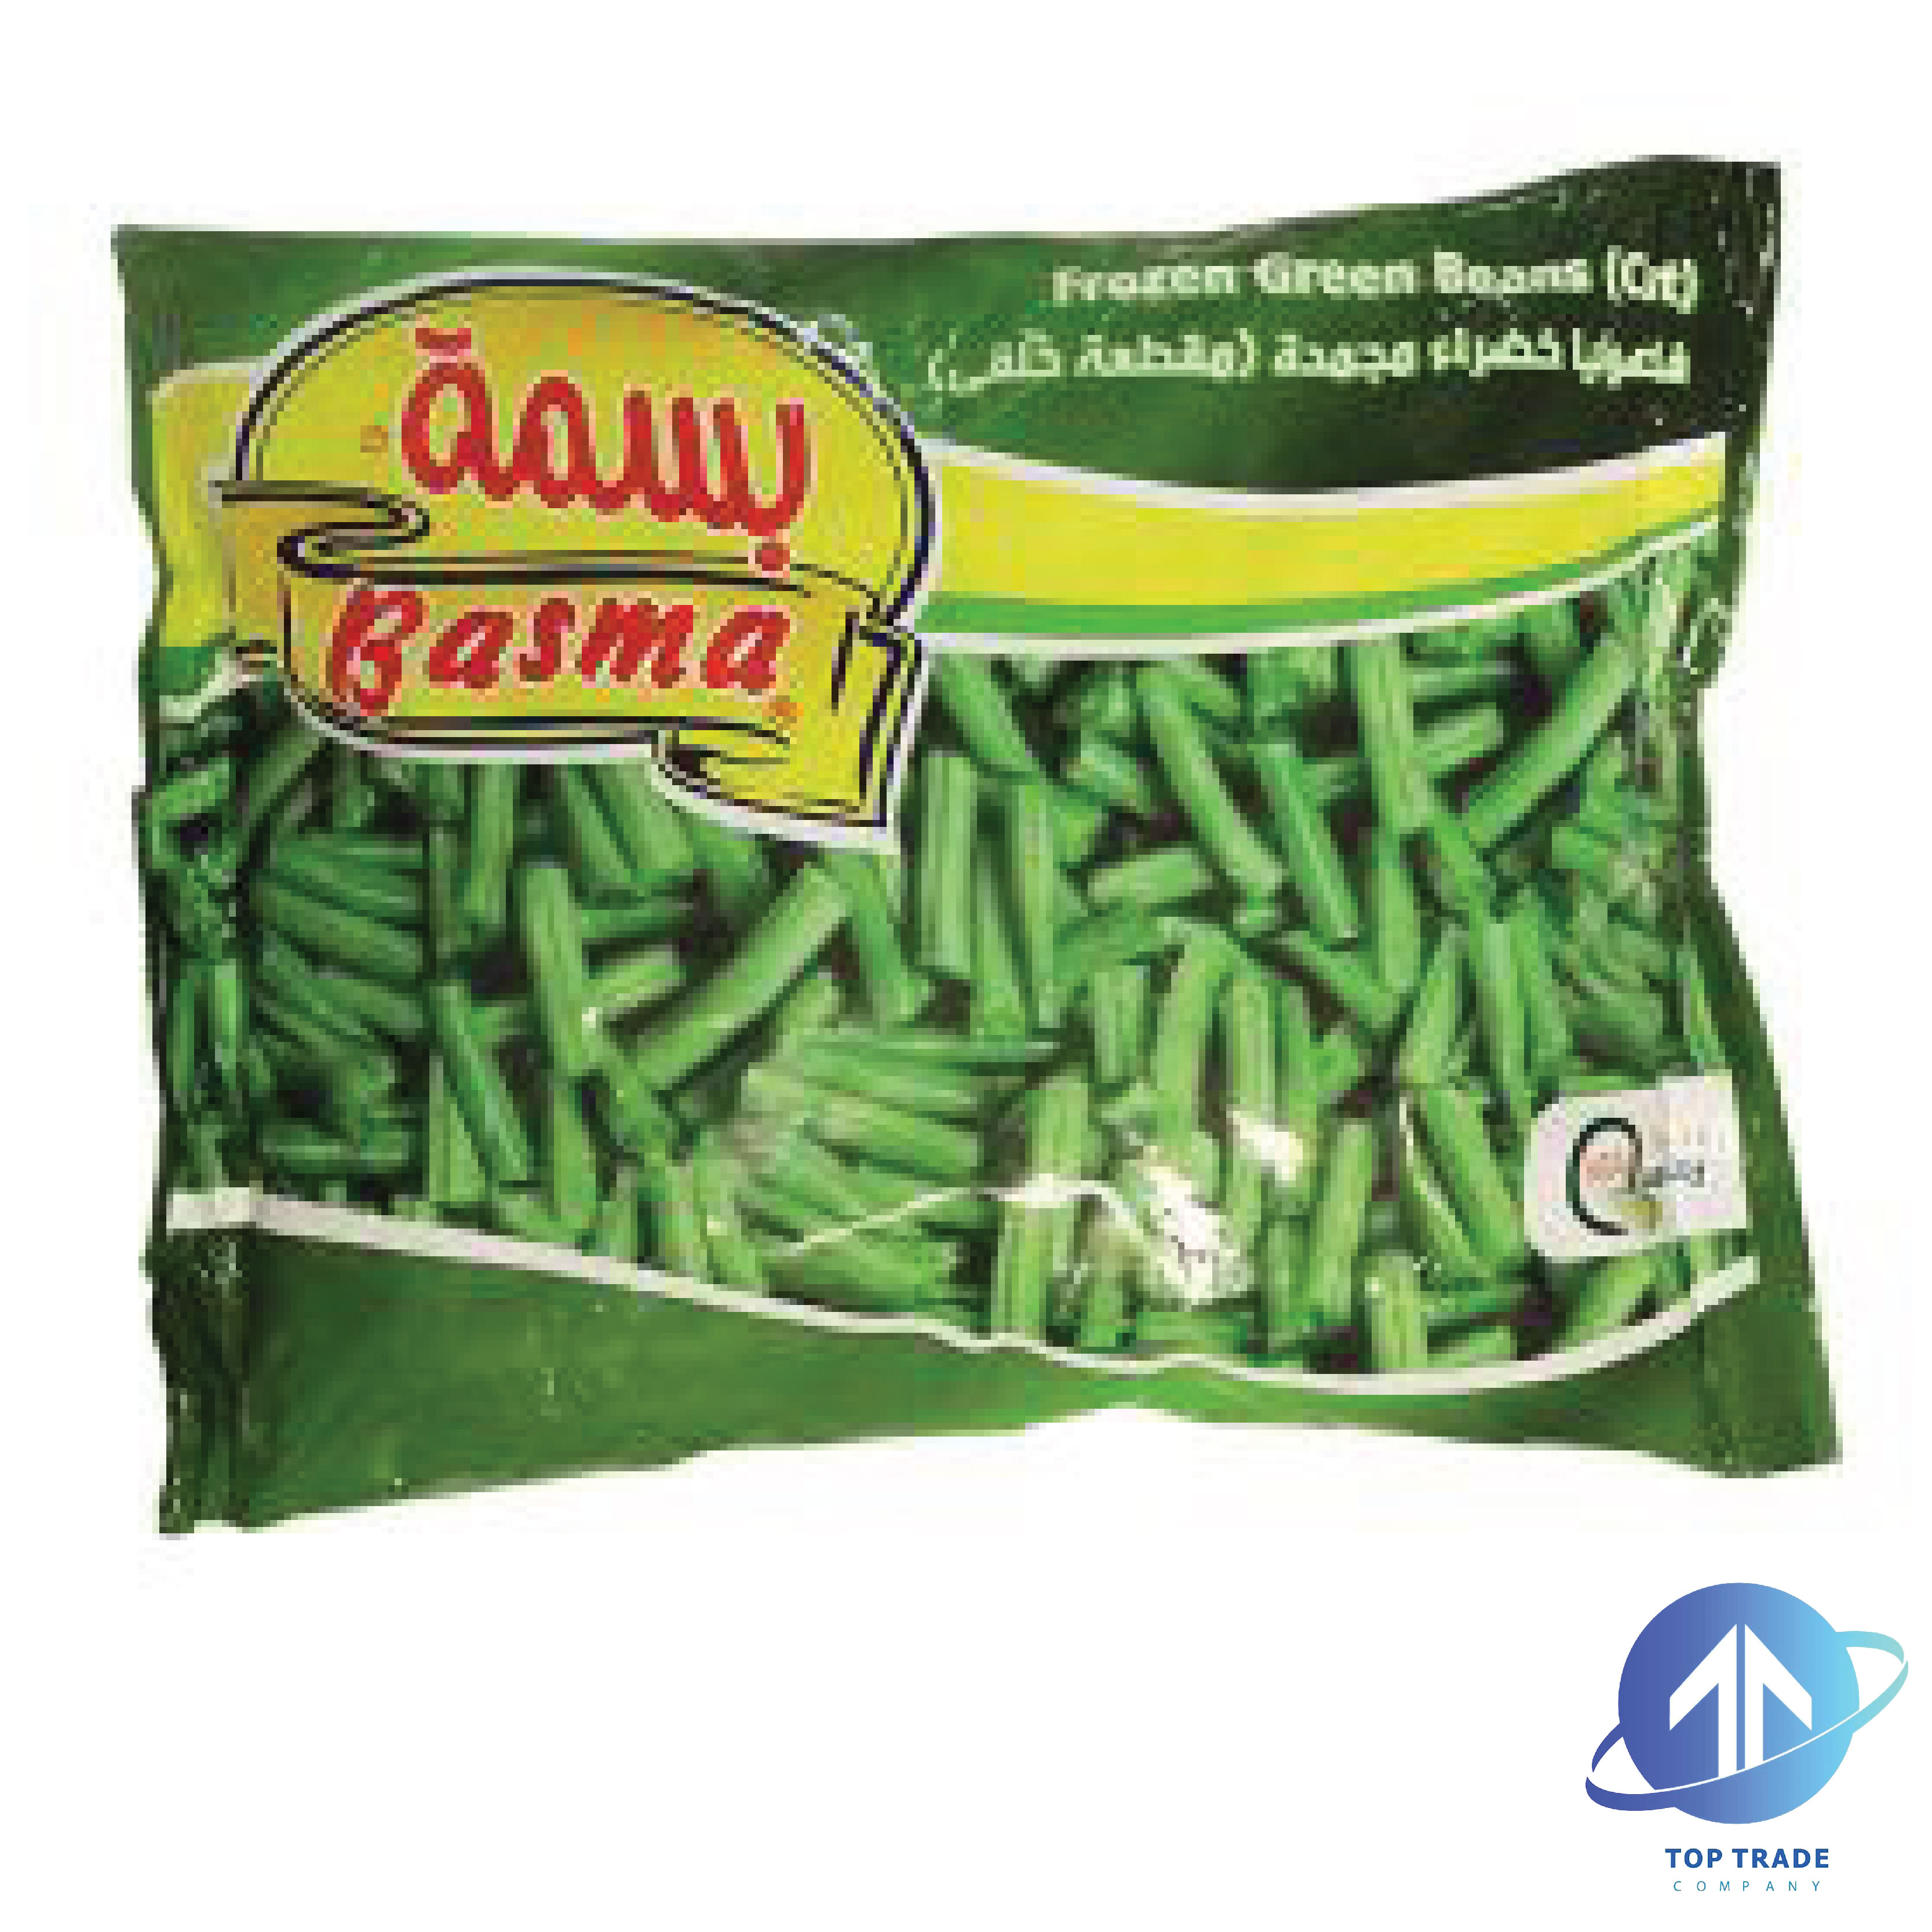 Basma Green Beans (cut) 400gr